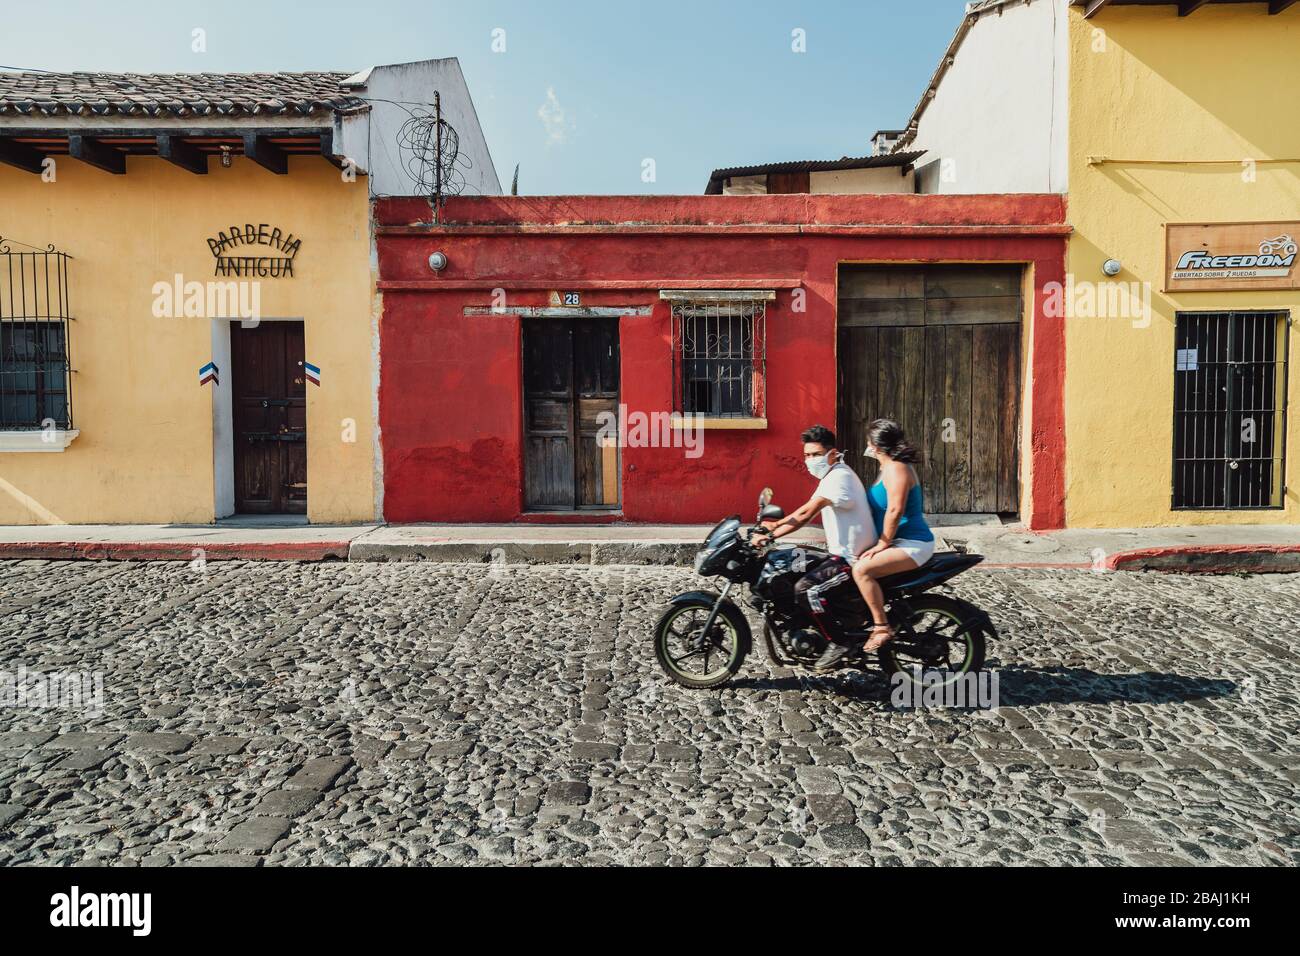 Pareja en su moto usando máscaras faciales durante la pandemia del coronavirus. Calles vacías en la colorida ciudad colonial de Antigua Guatemala Foto de stock